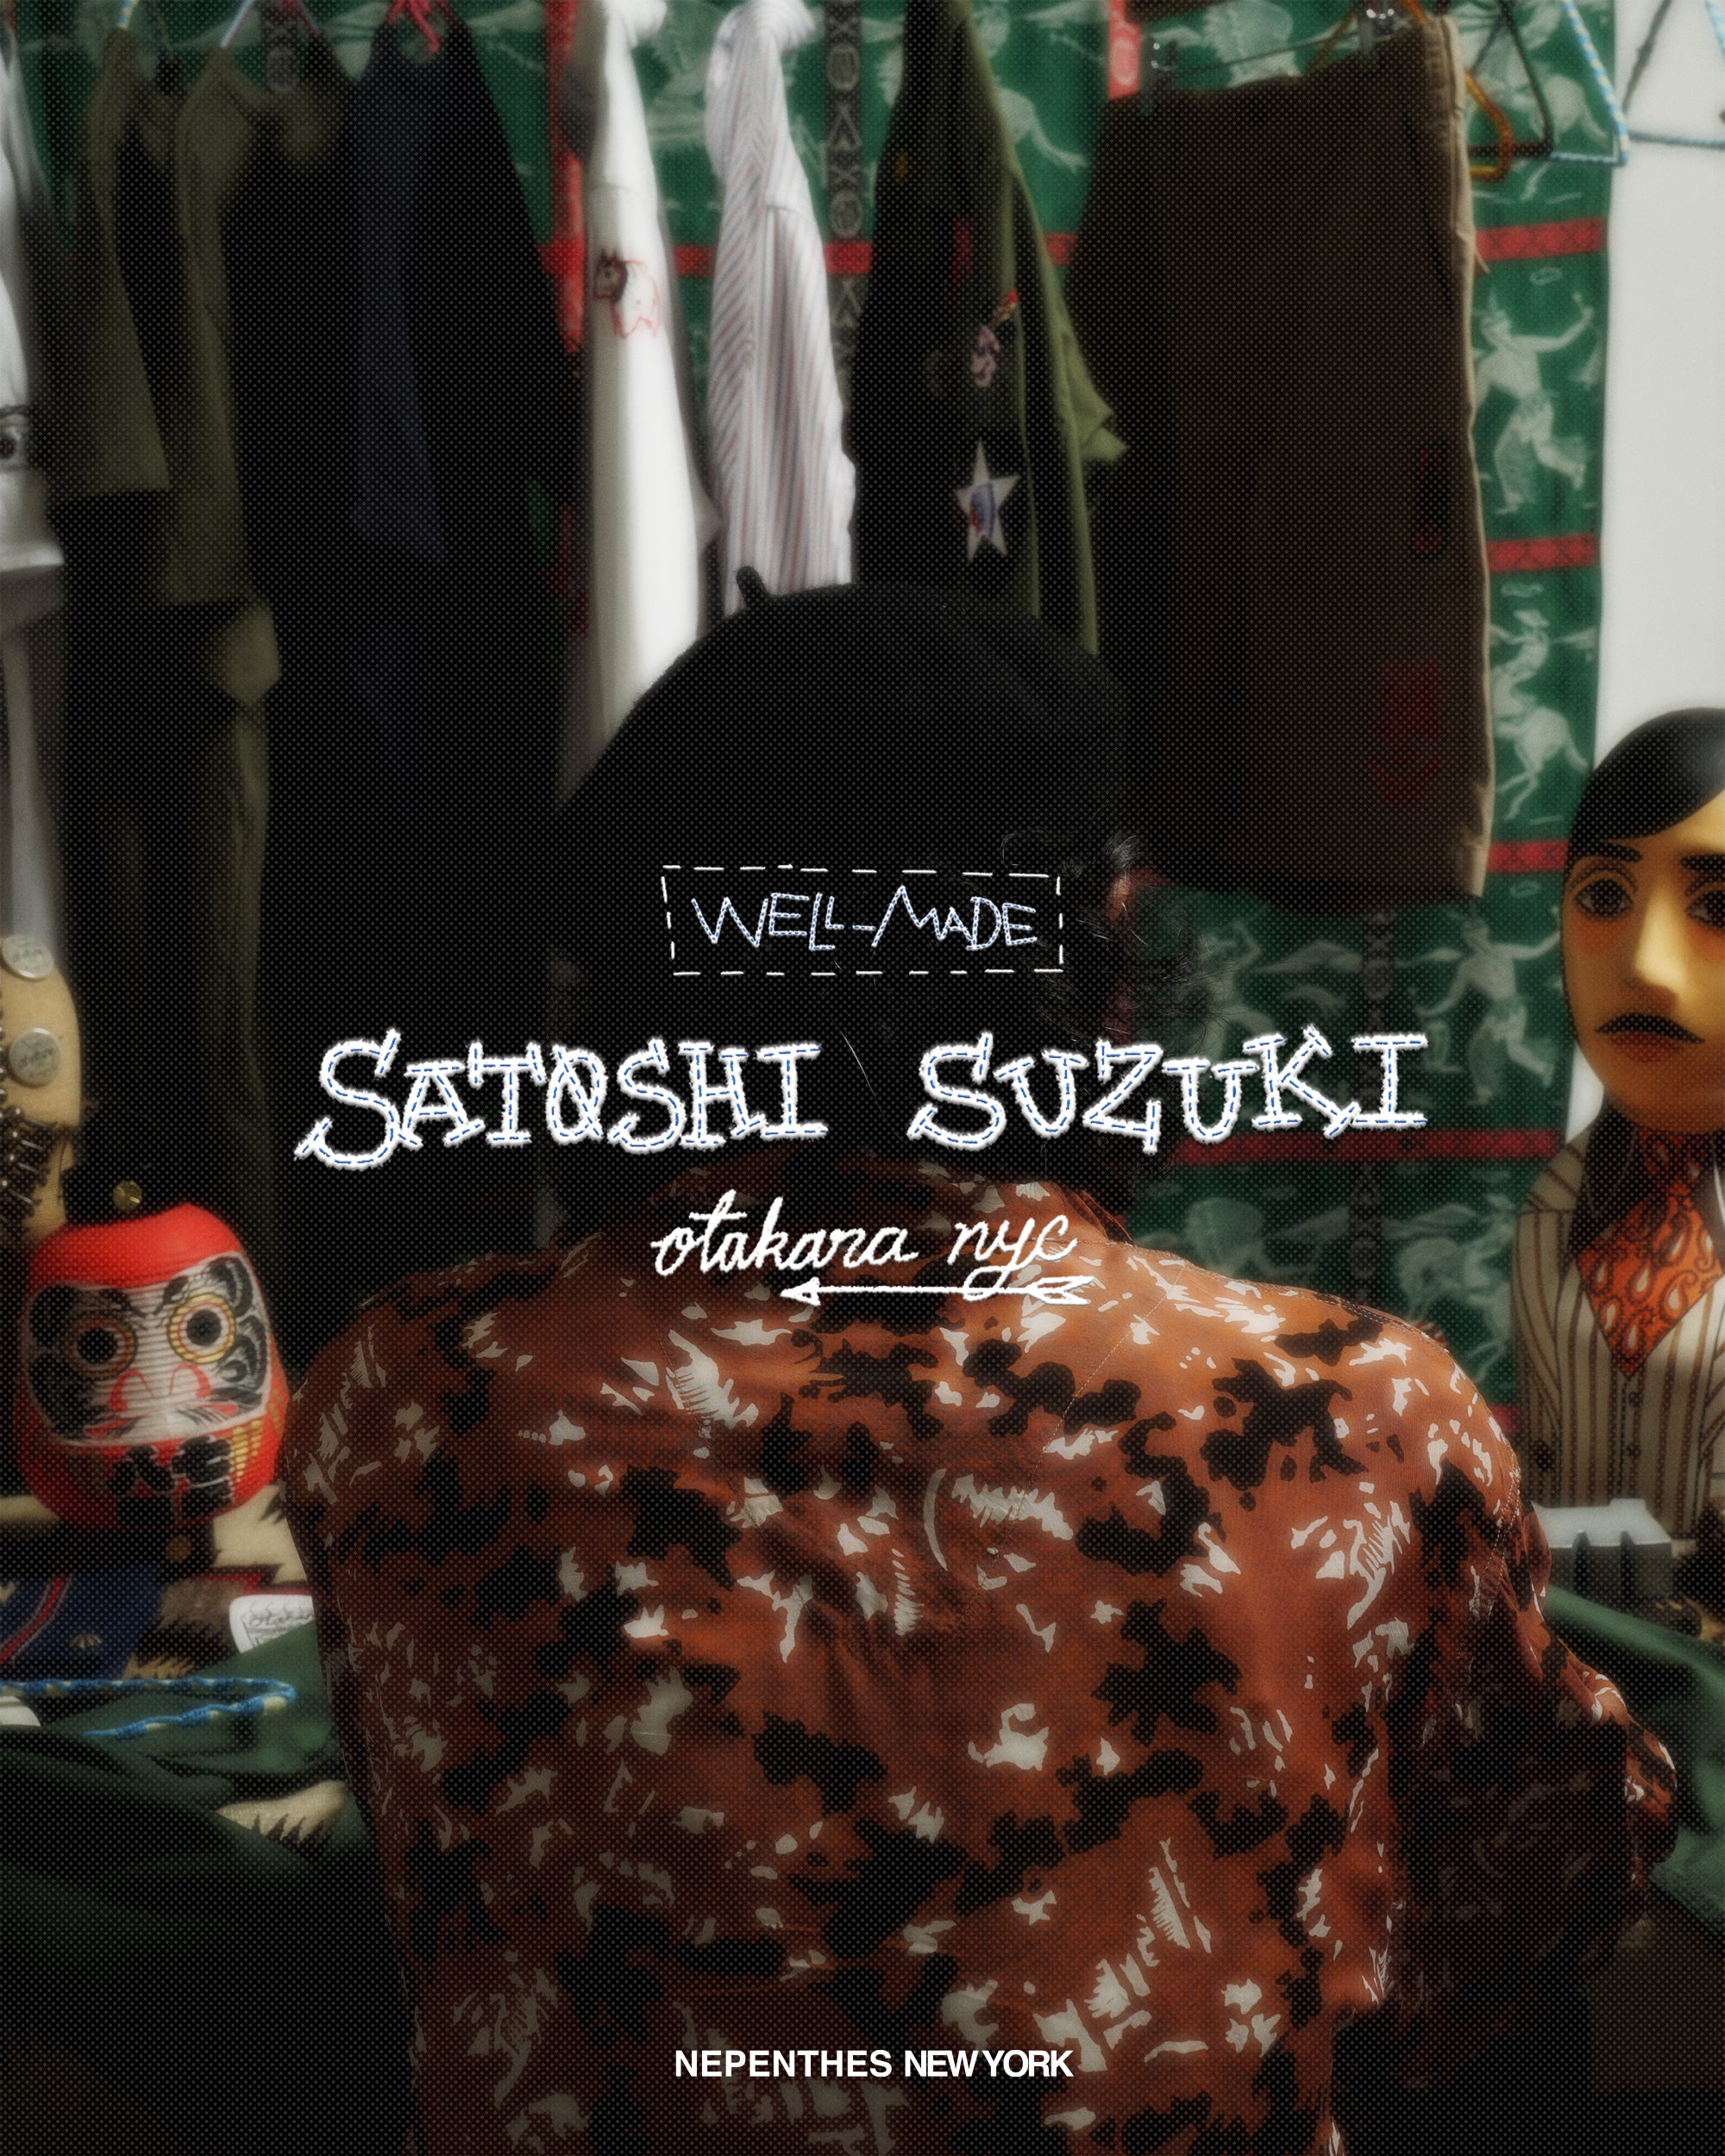 [WELL-MADE] SATOSHI SUZUKI - OTAKARA NYC